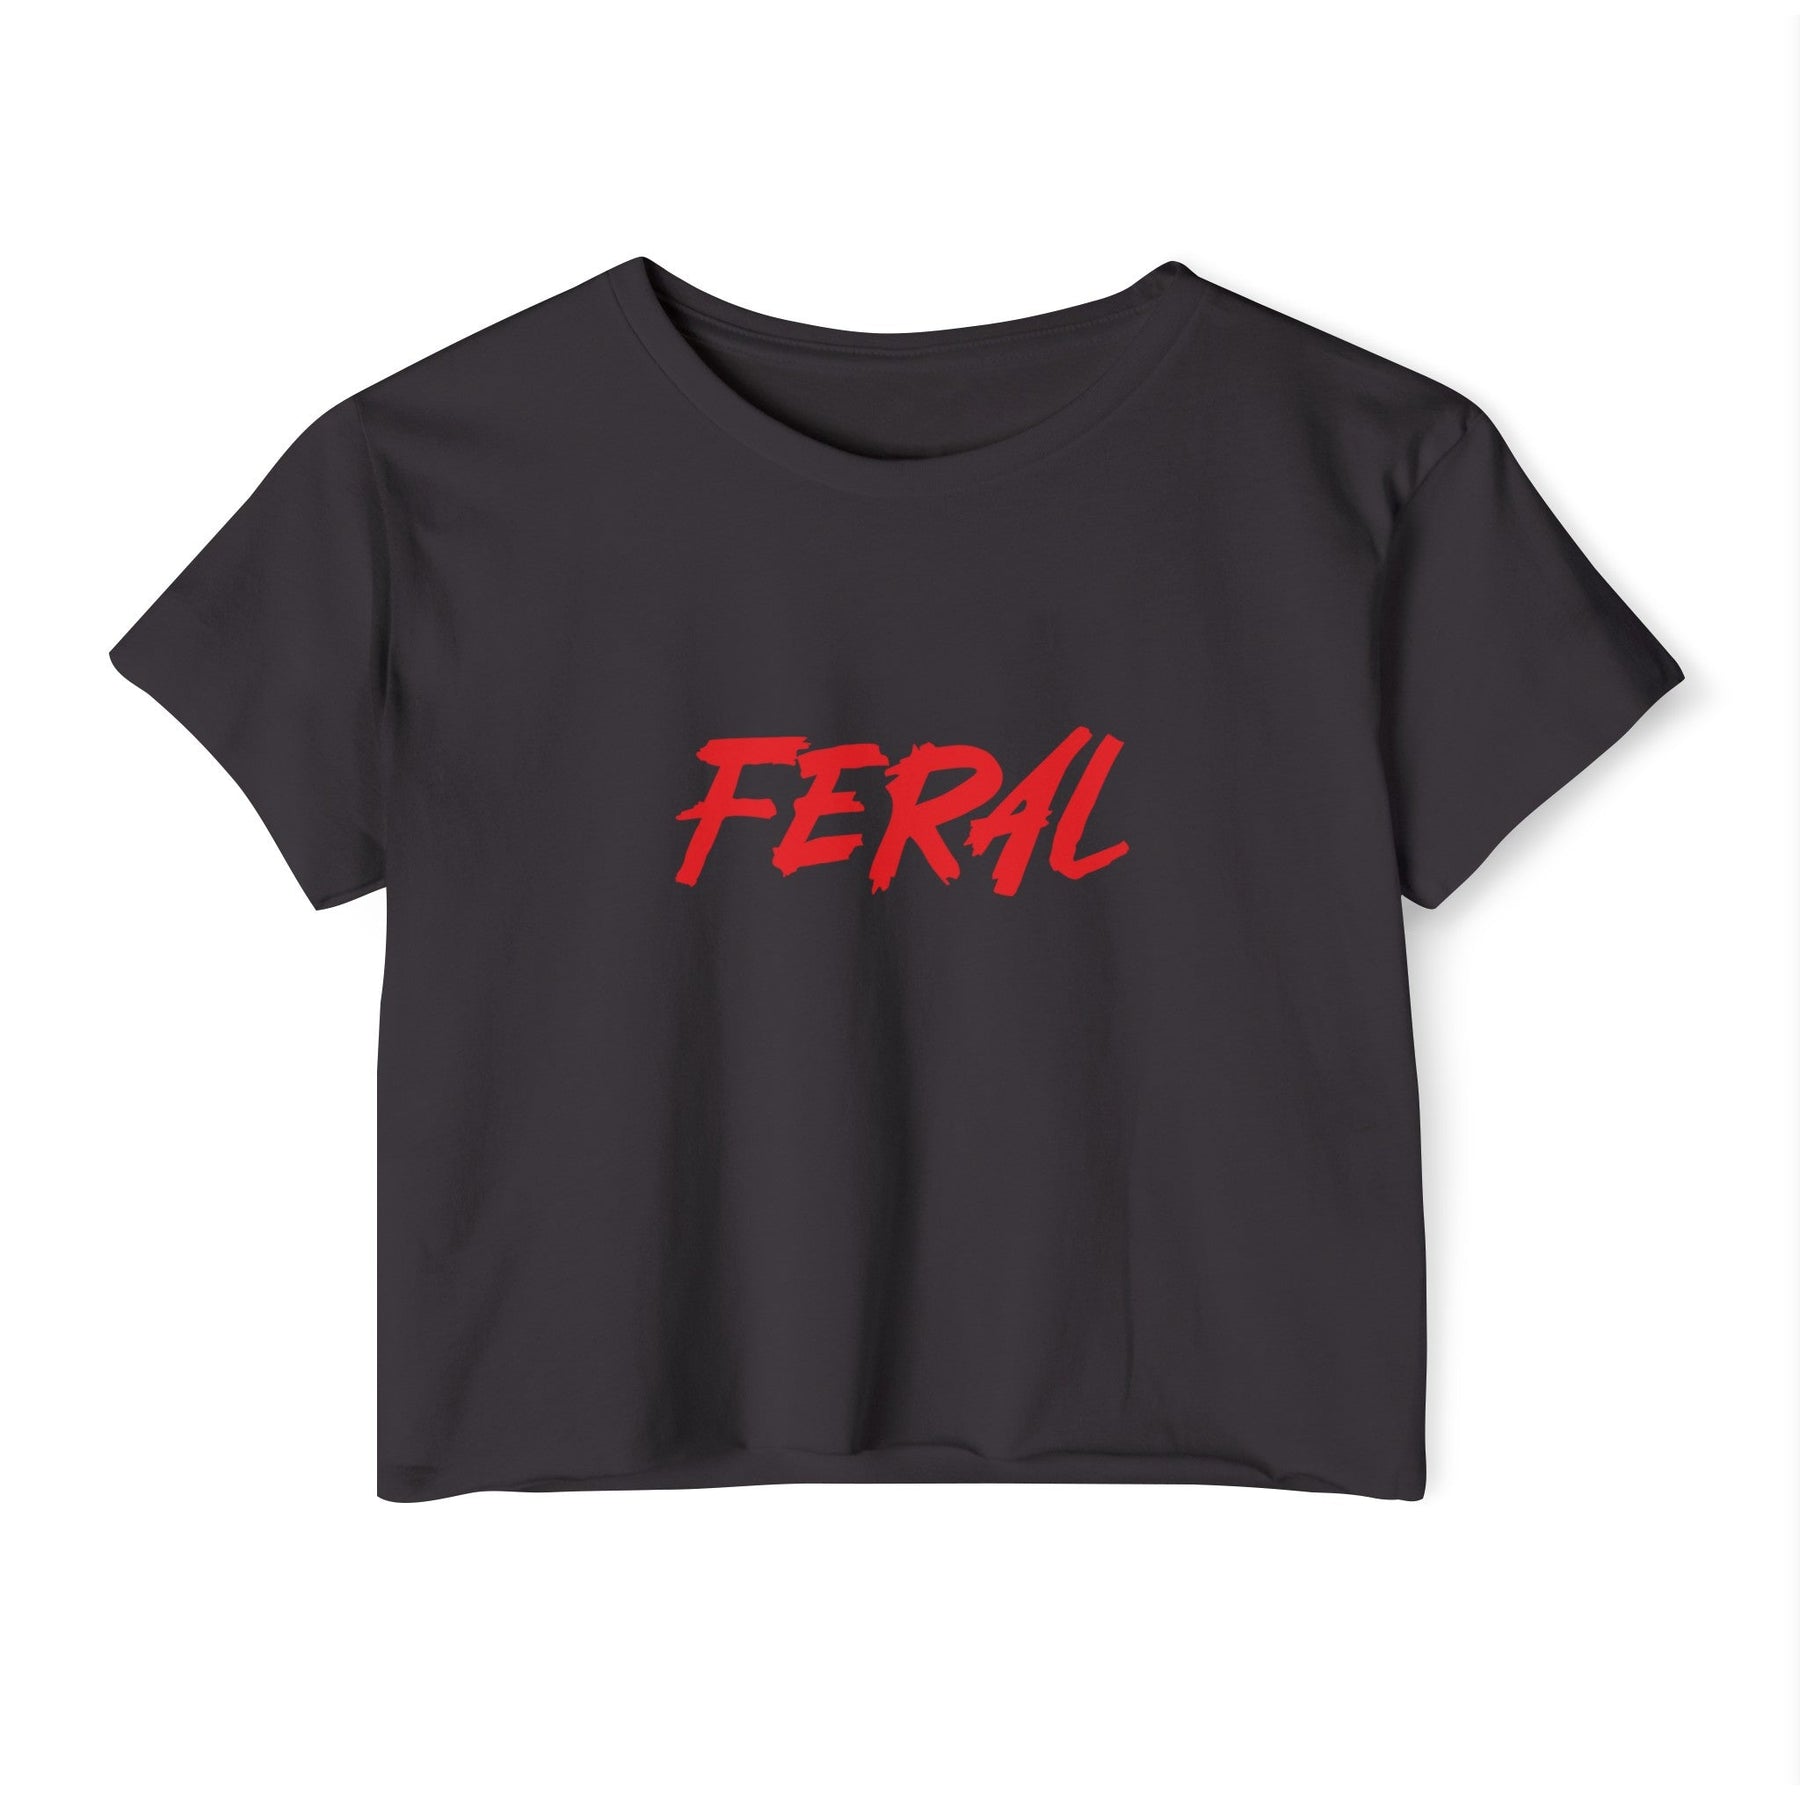 FERAL Women's Lightweight Crop Top - Goth Cloth Co.T - Shirt83326736340116629472